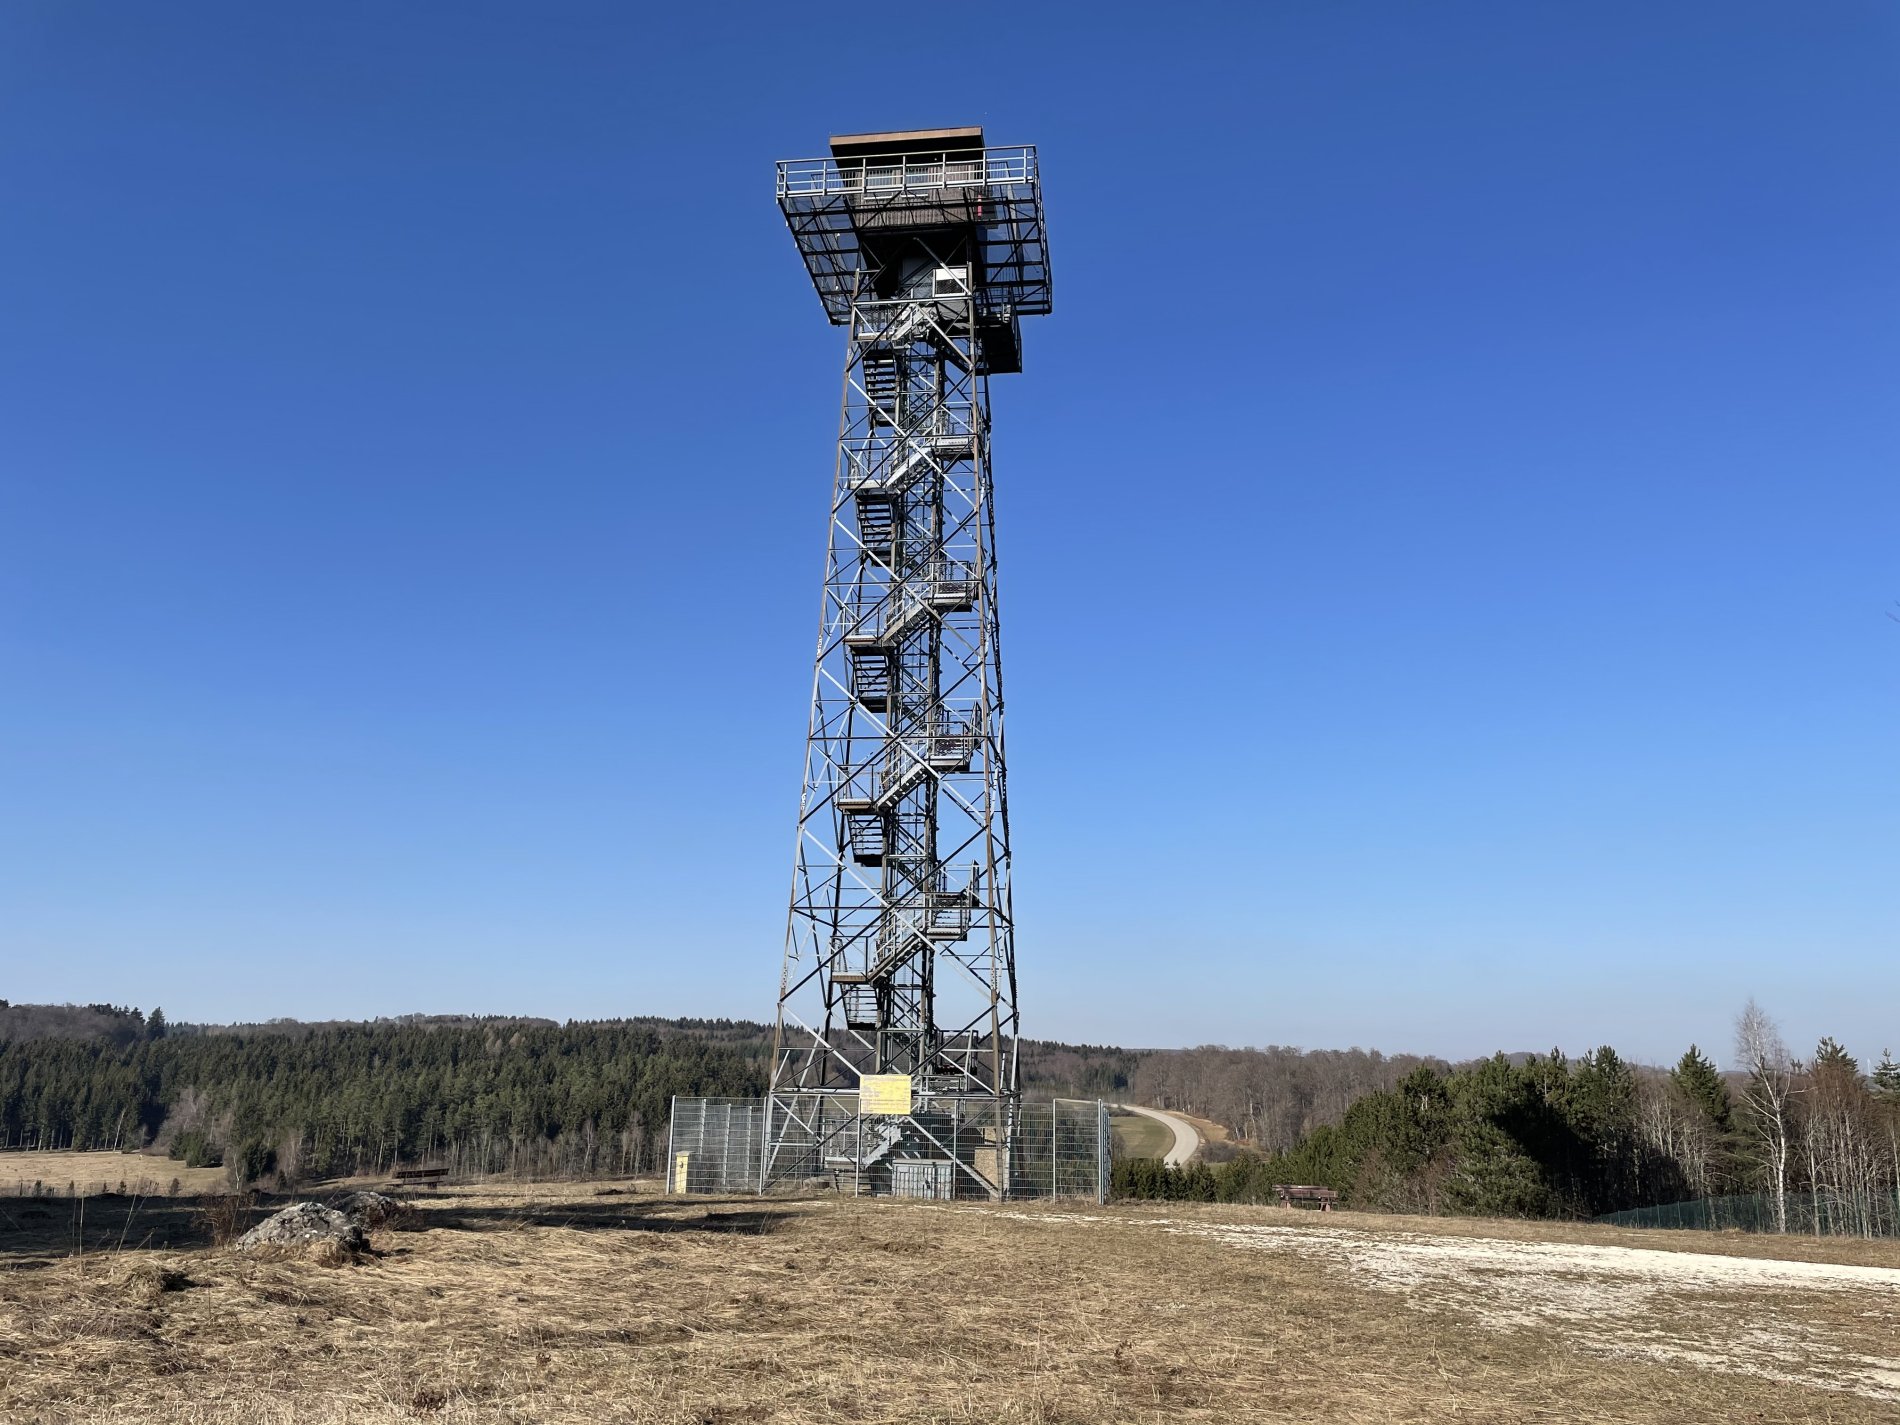 Der Turm Heroldstatt auf dem ehemaligen Truppenübungsplatz Münsingen im Biosphärengebiet Schwäbische Alb. Ein Stahlgitterturm im Frühling. Oben ist ein kleines Häuschen und eine Aussichtsplattform.